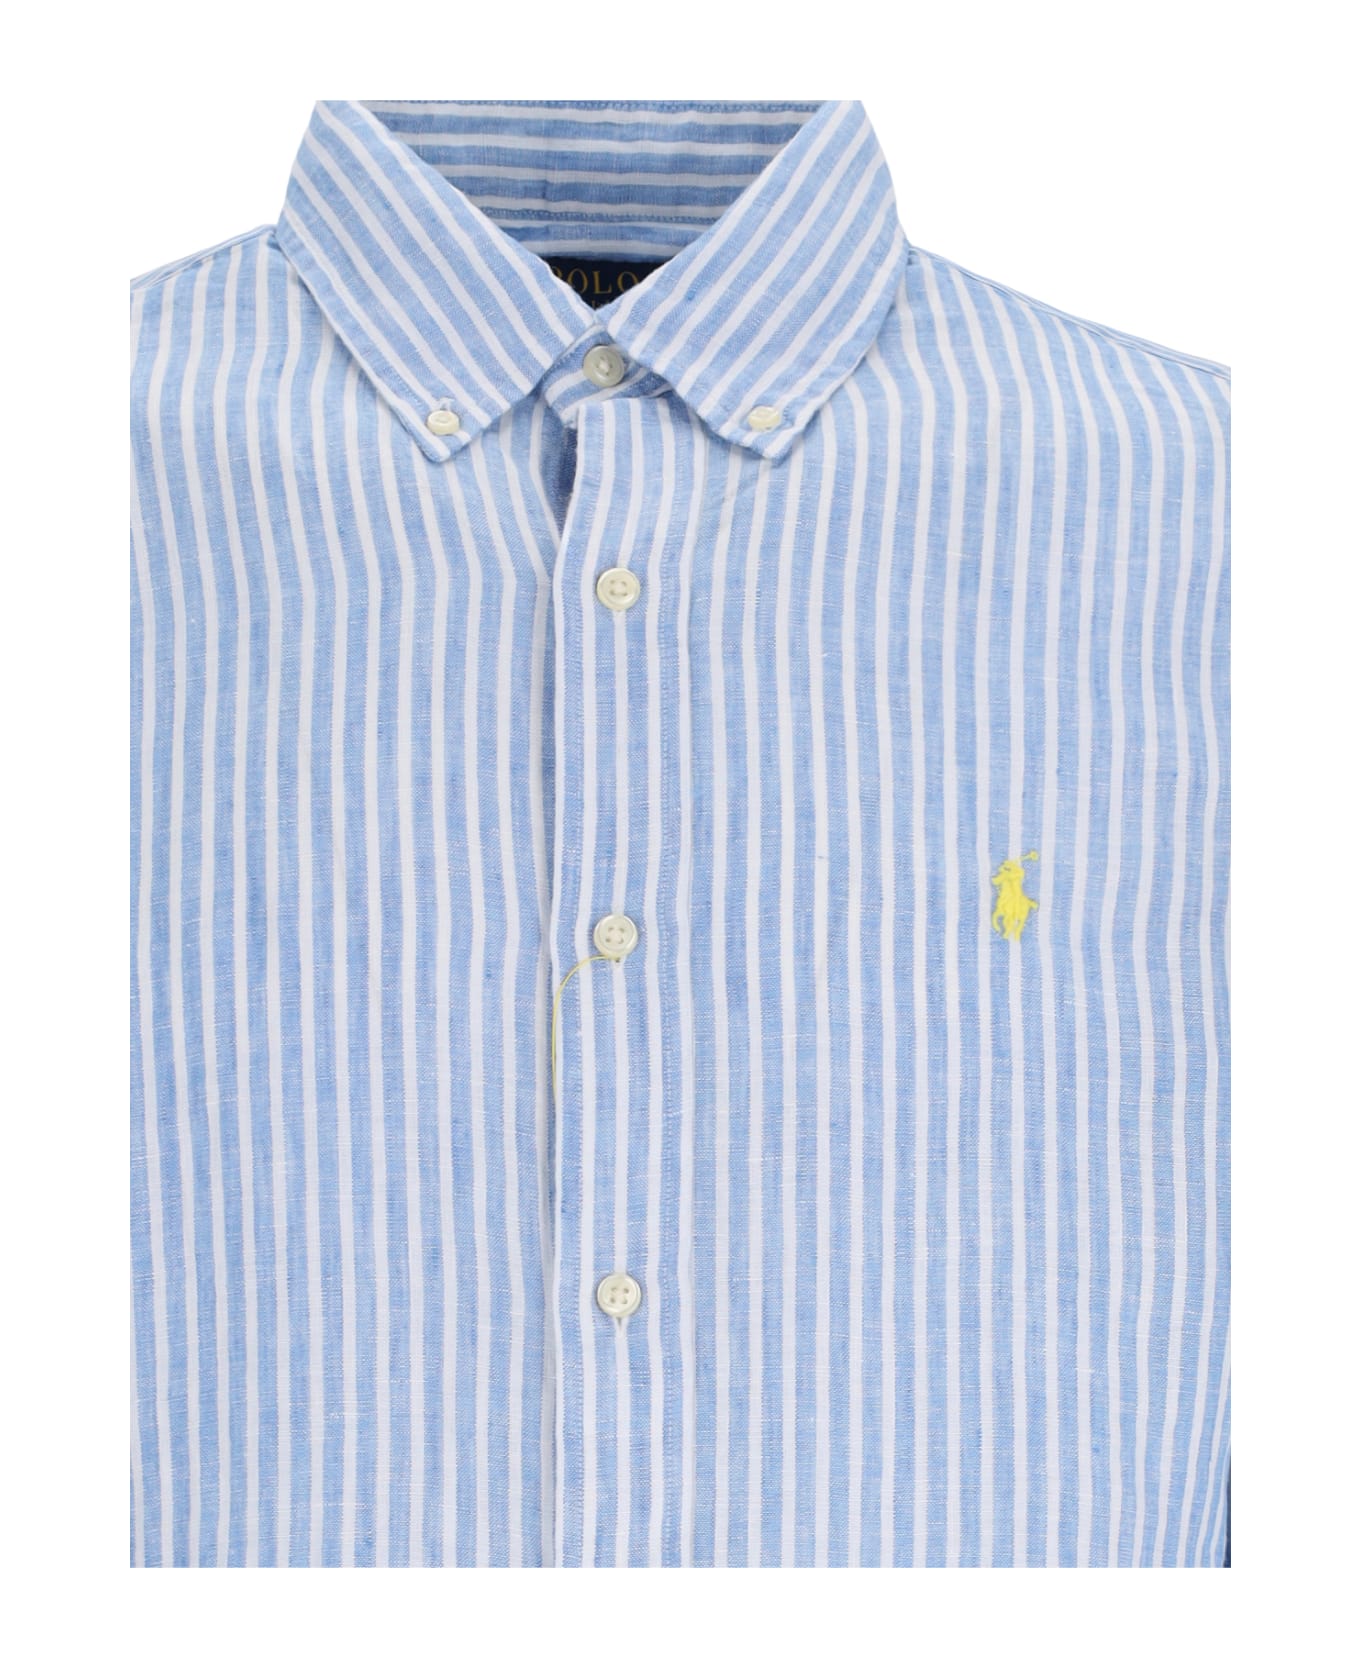 Ralph Lauren Logo Shirt - 5137A BLUE/WHITE